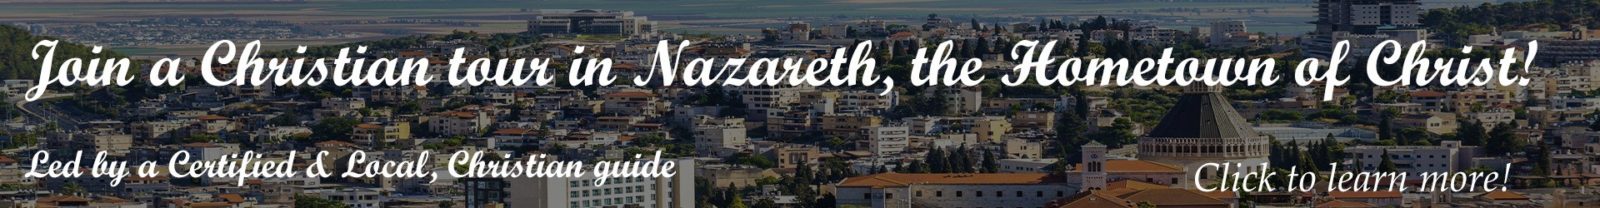 Christian tour in Nazareth